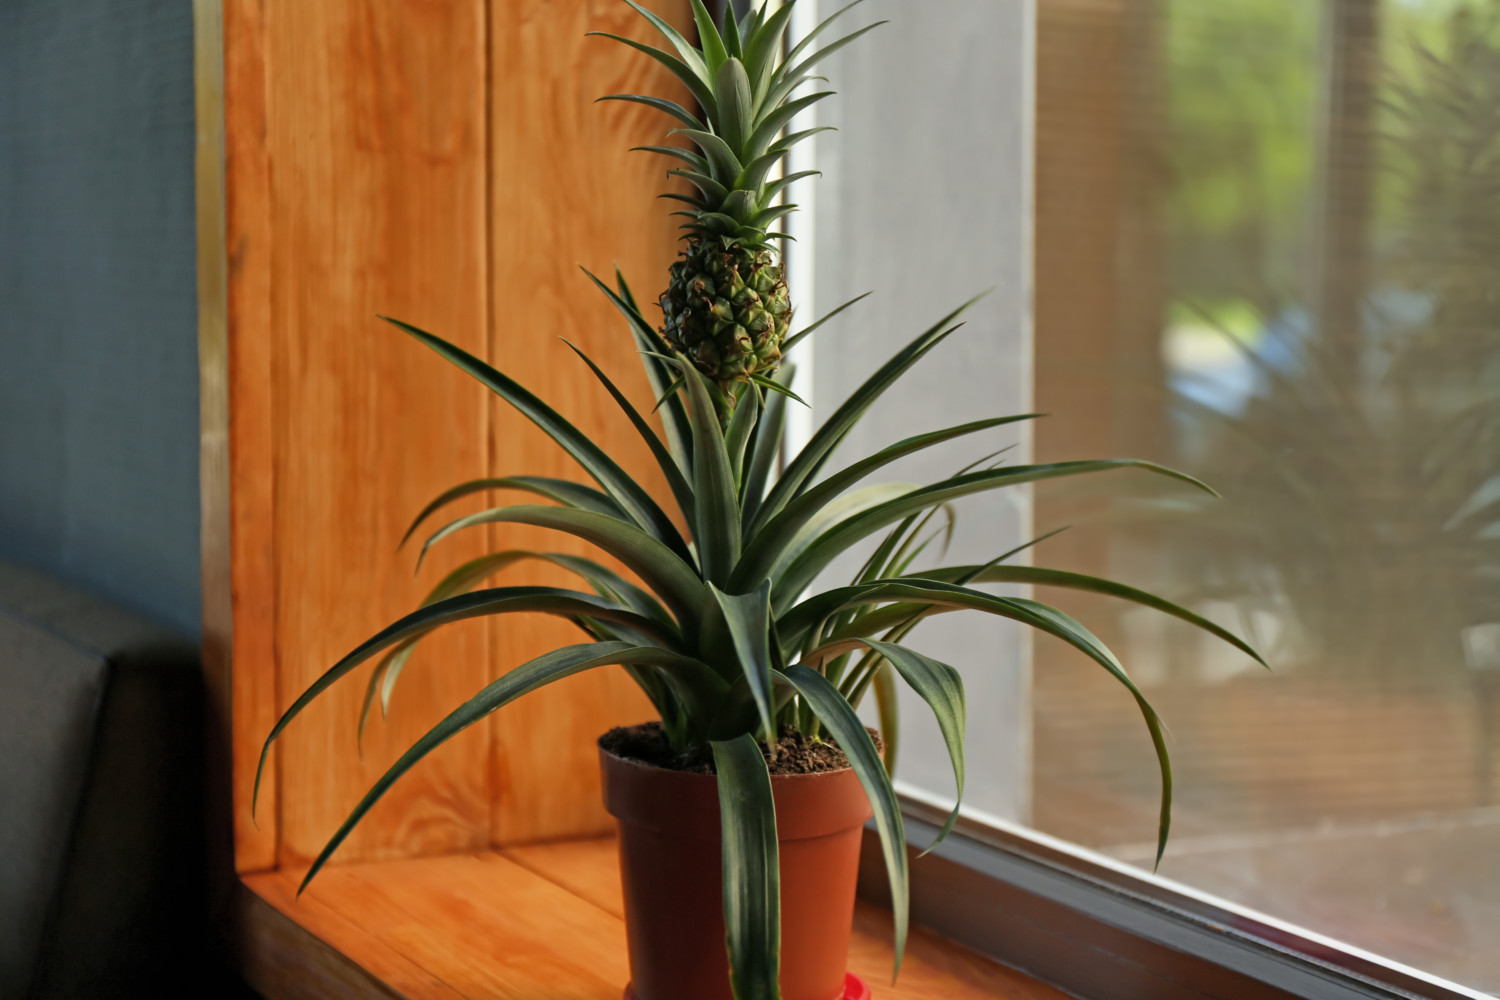 Pineapple plant on wooden windowsill